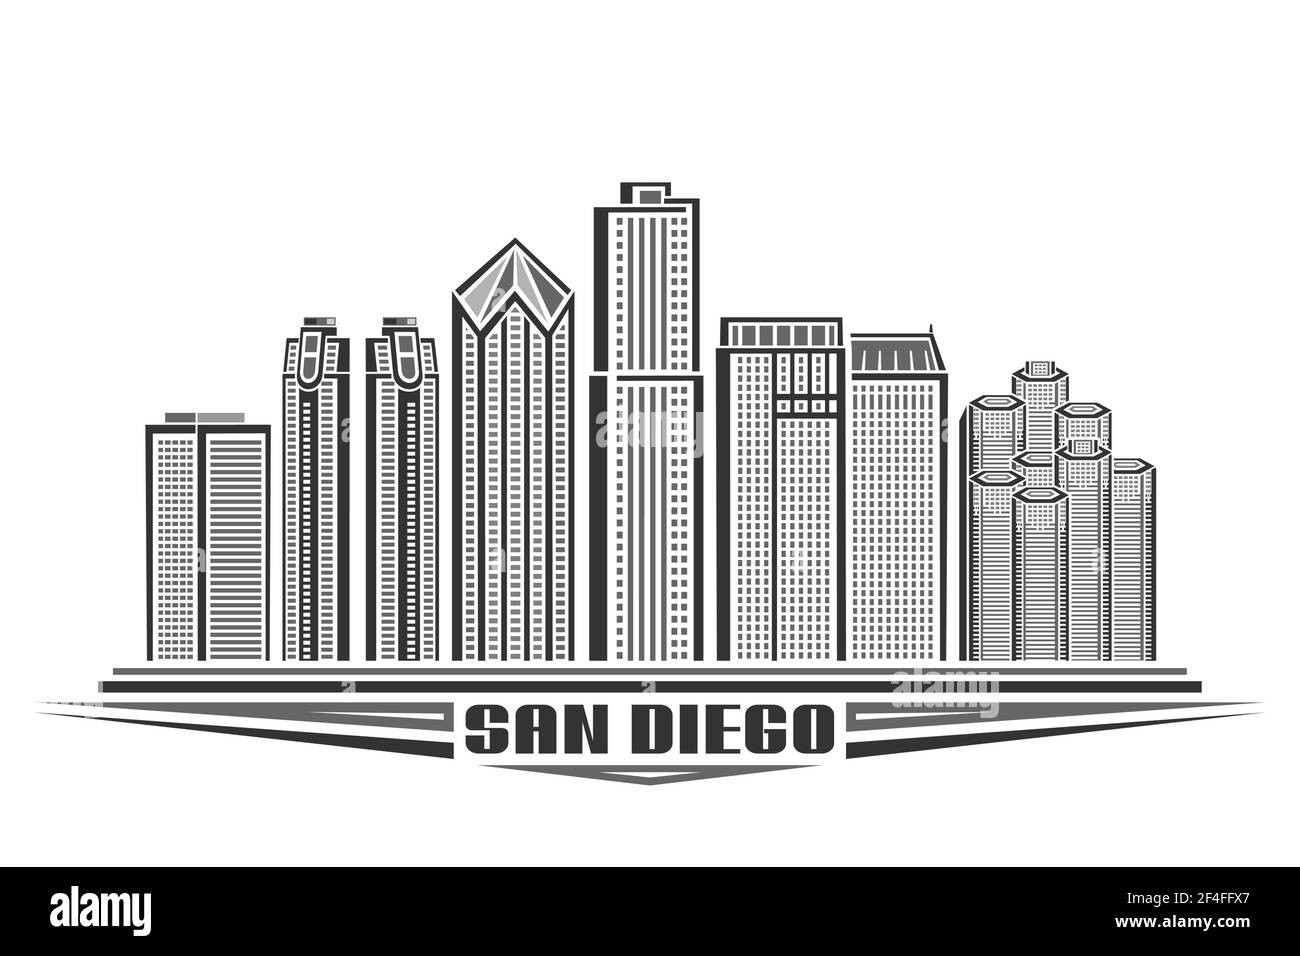 Illustrazione vettoriale di San Diego, poster orizzontale monocromatico con disegno del famoso paesaggio cittadino americano, concetto urbano con decorazione unica Illustrazione Vettoriale